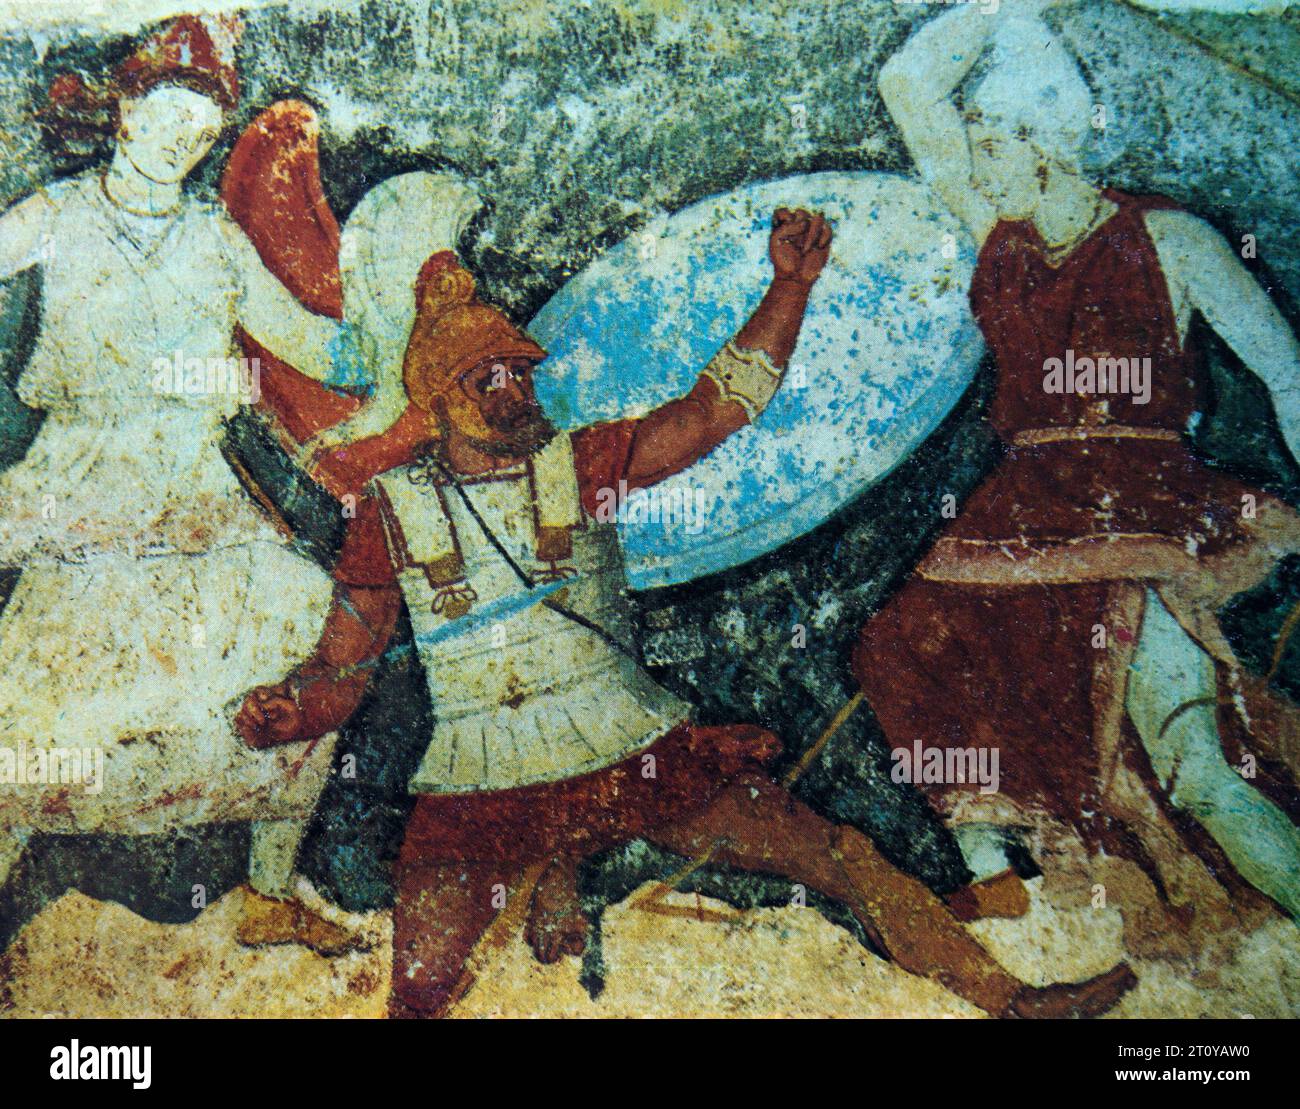 Zwei Amazonen greifen einen griechischen Soldaten an – Gemälde aus dem Jahr 370-360 v. Chr. auf einem unterirdischen Grab in Tarquinia, Italien. (Halbton-Postkartenbild). Stockfoto